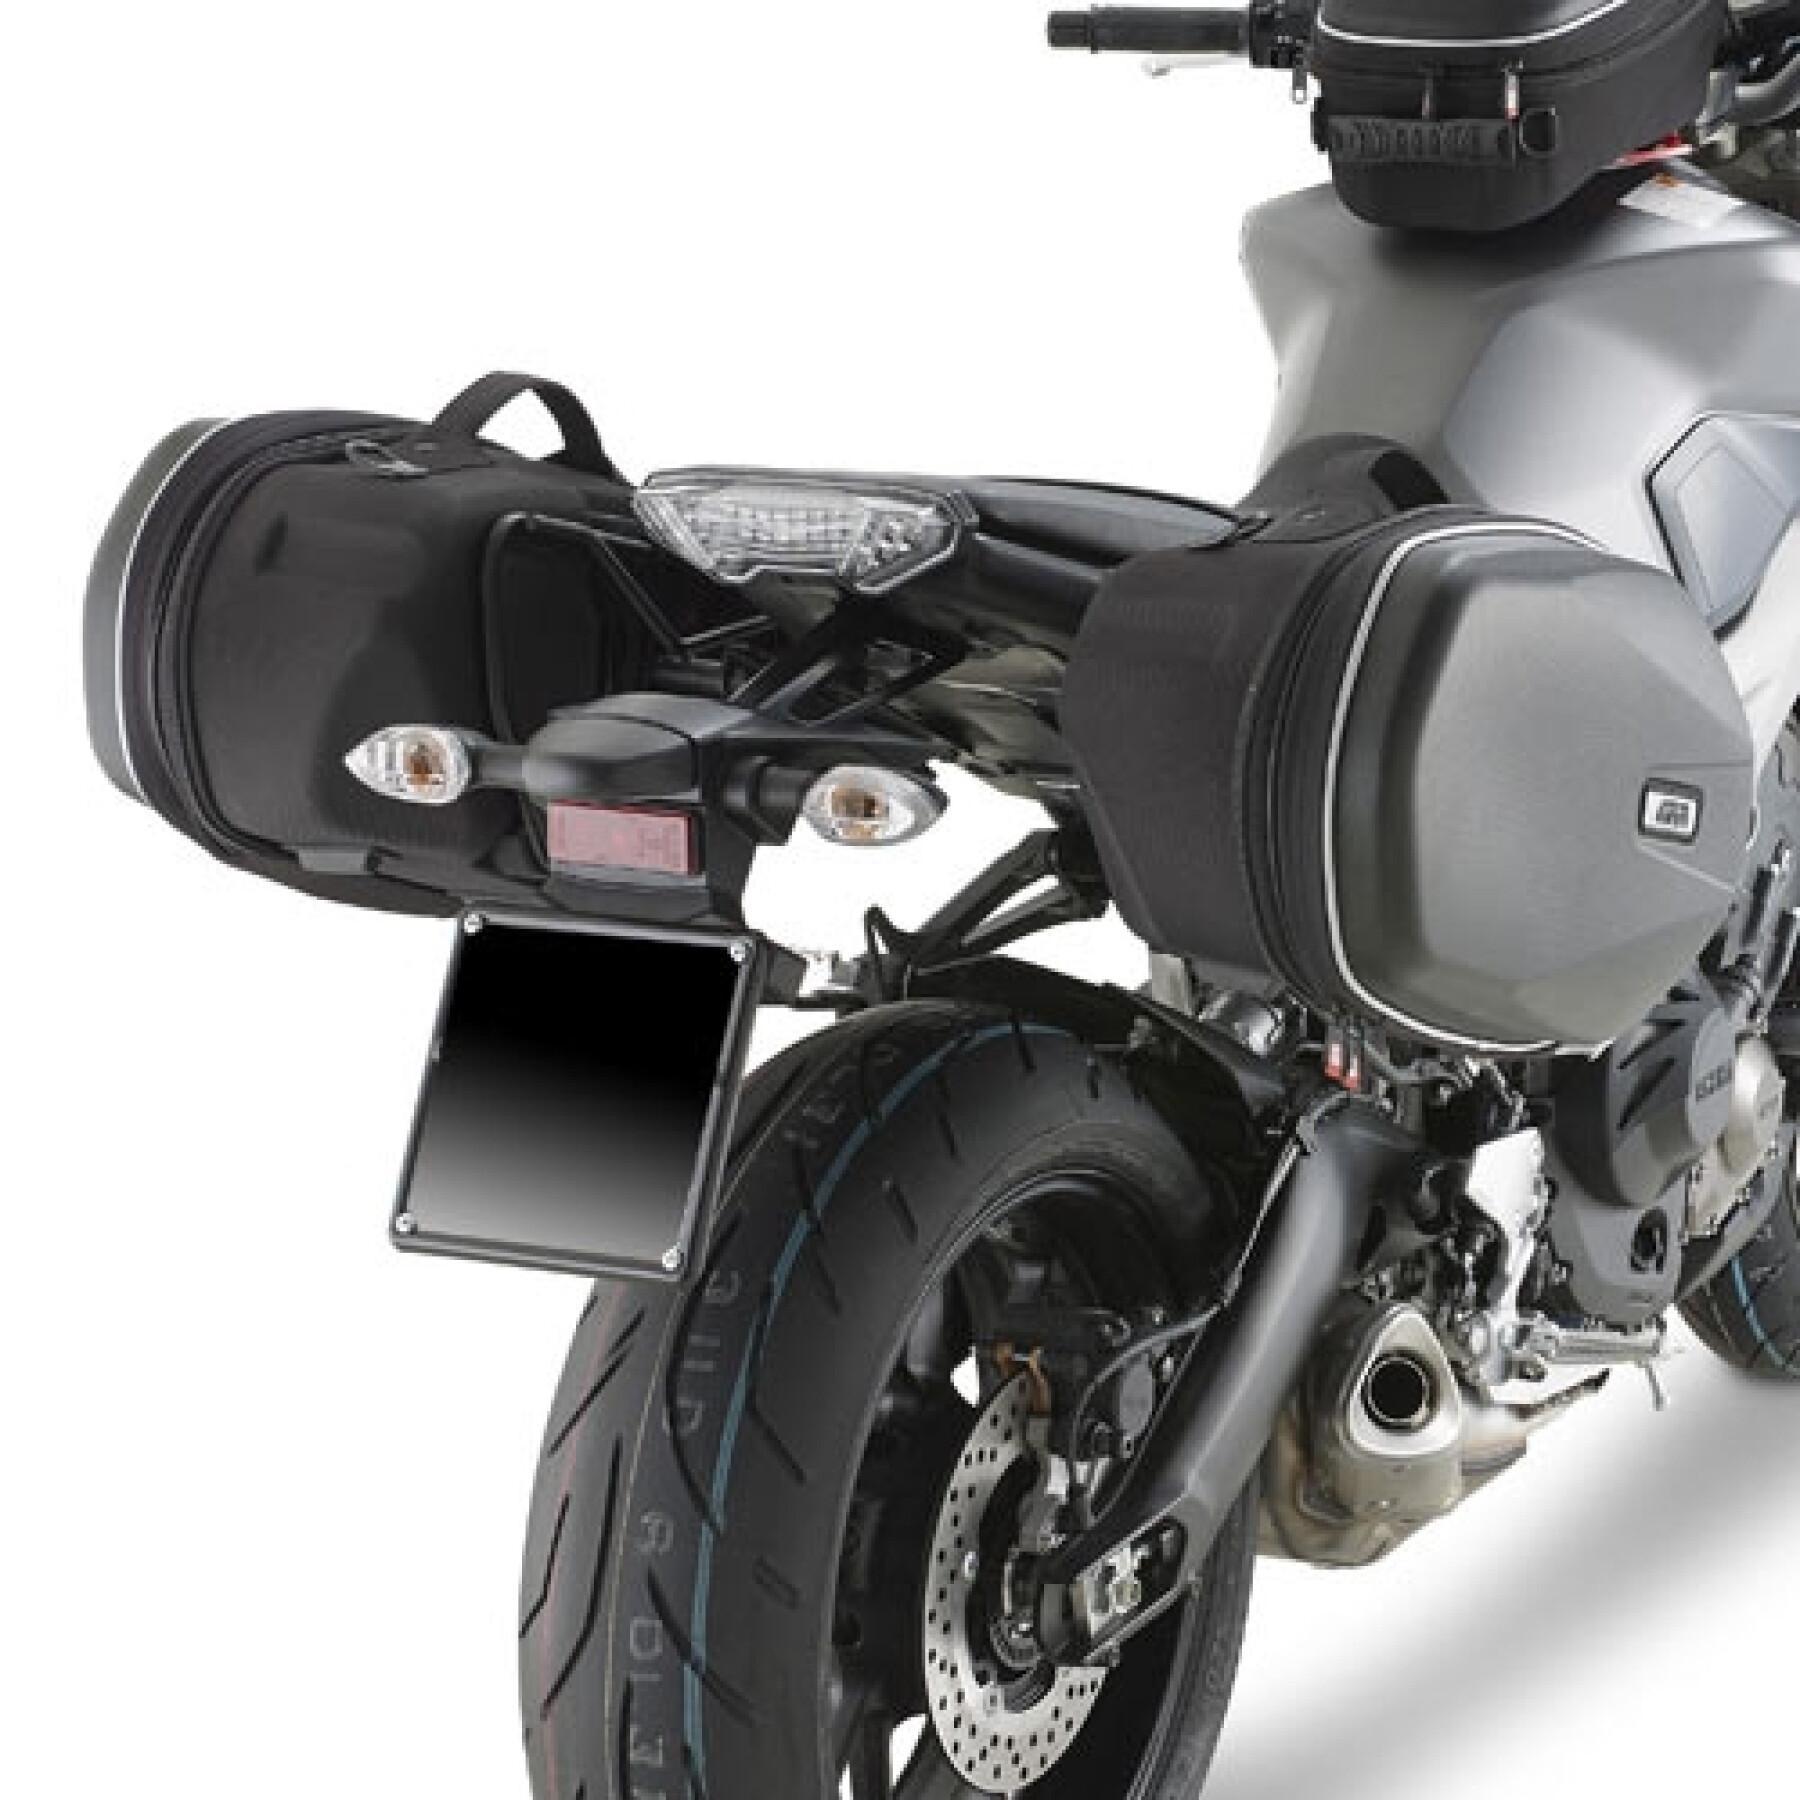 espaciadores para maletas de moto Givi Easylock Yamaha MT-09 (13 à 16)